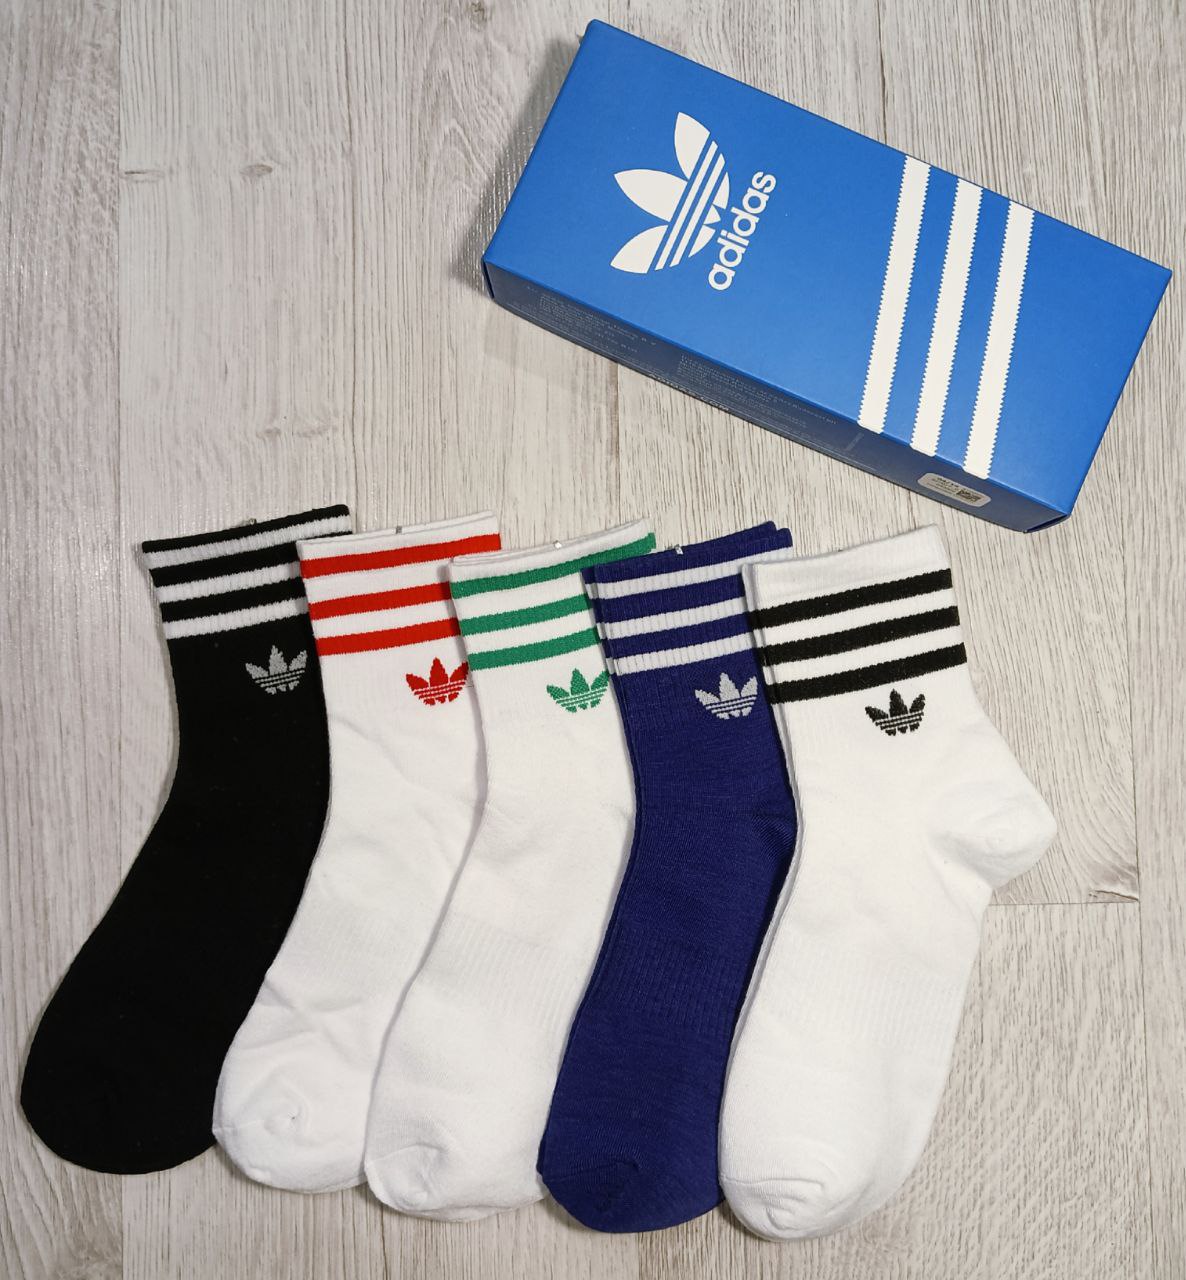 Комплект носков мужских Adidas Originals Orig разноцветных one size, 5 пар